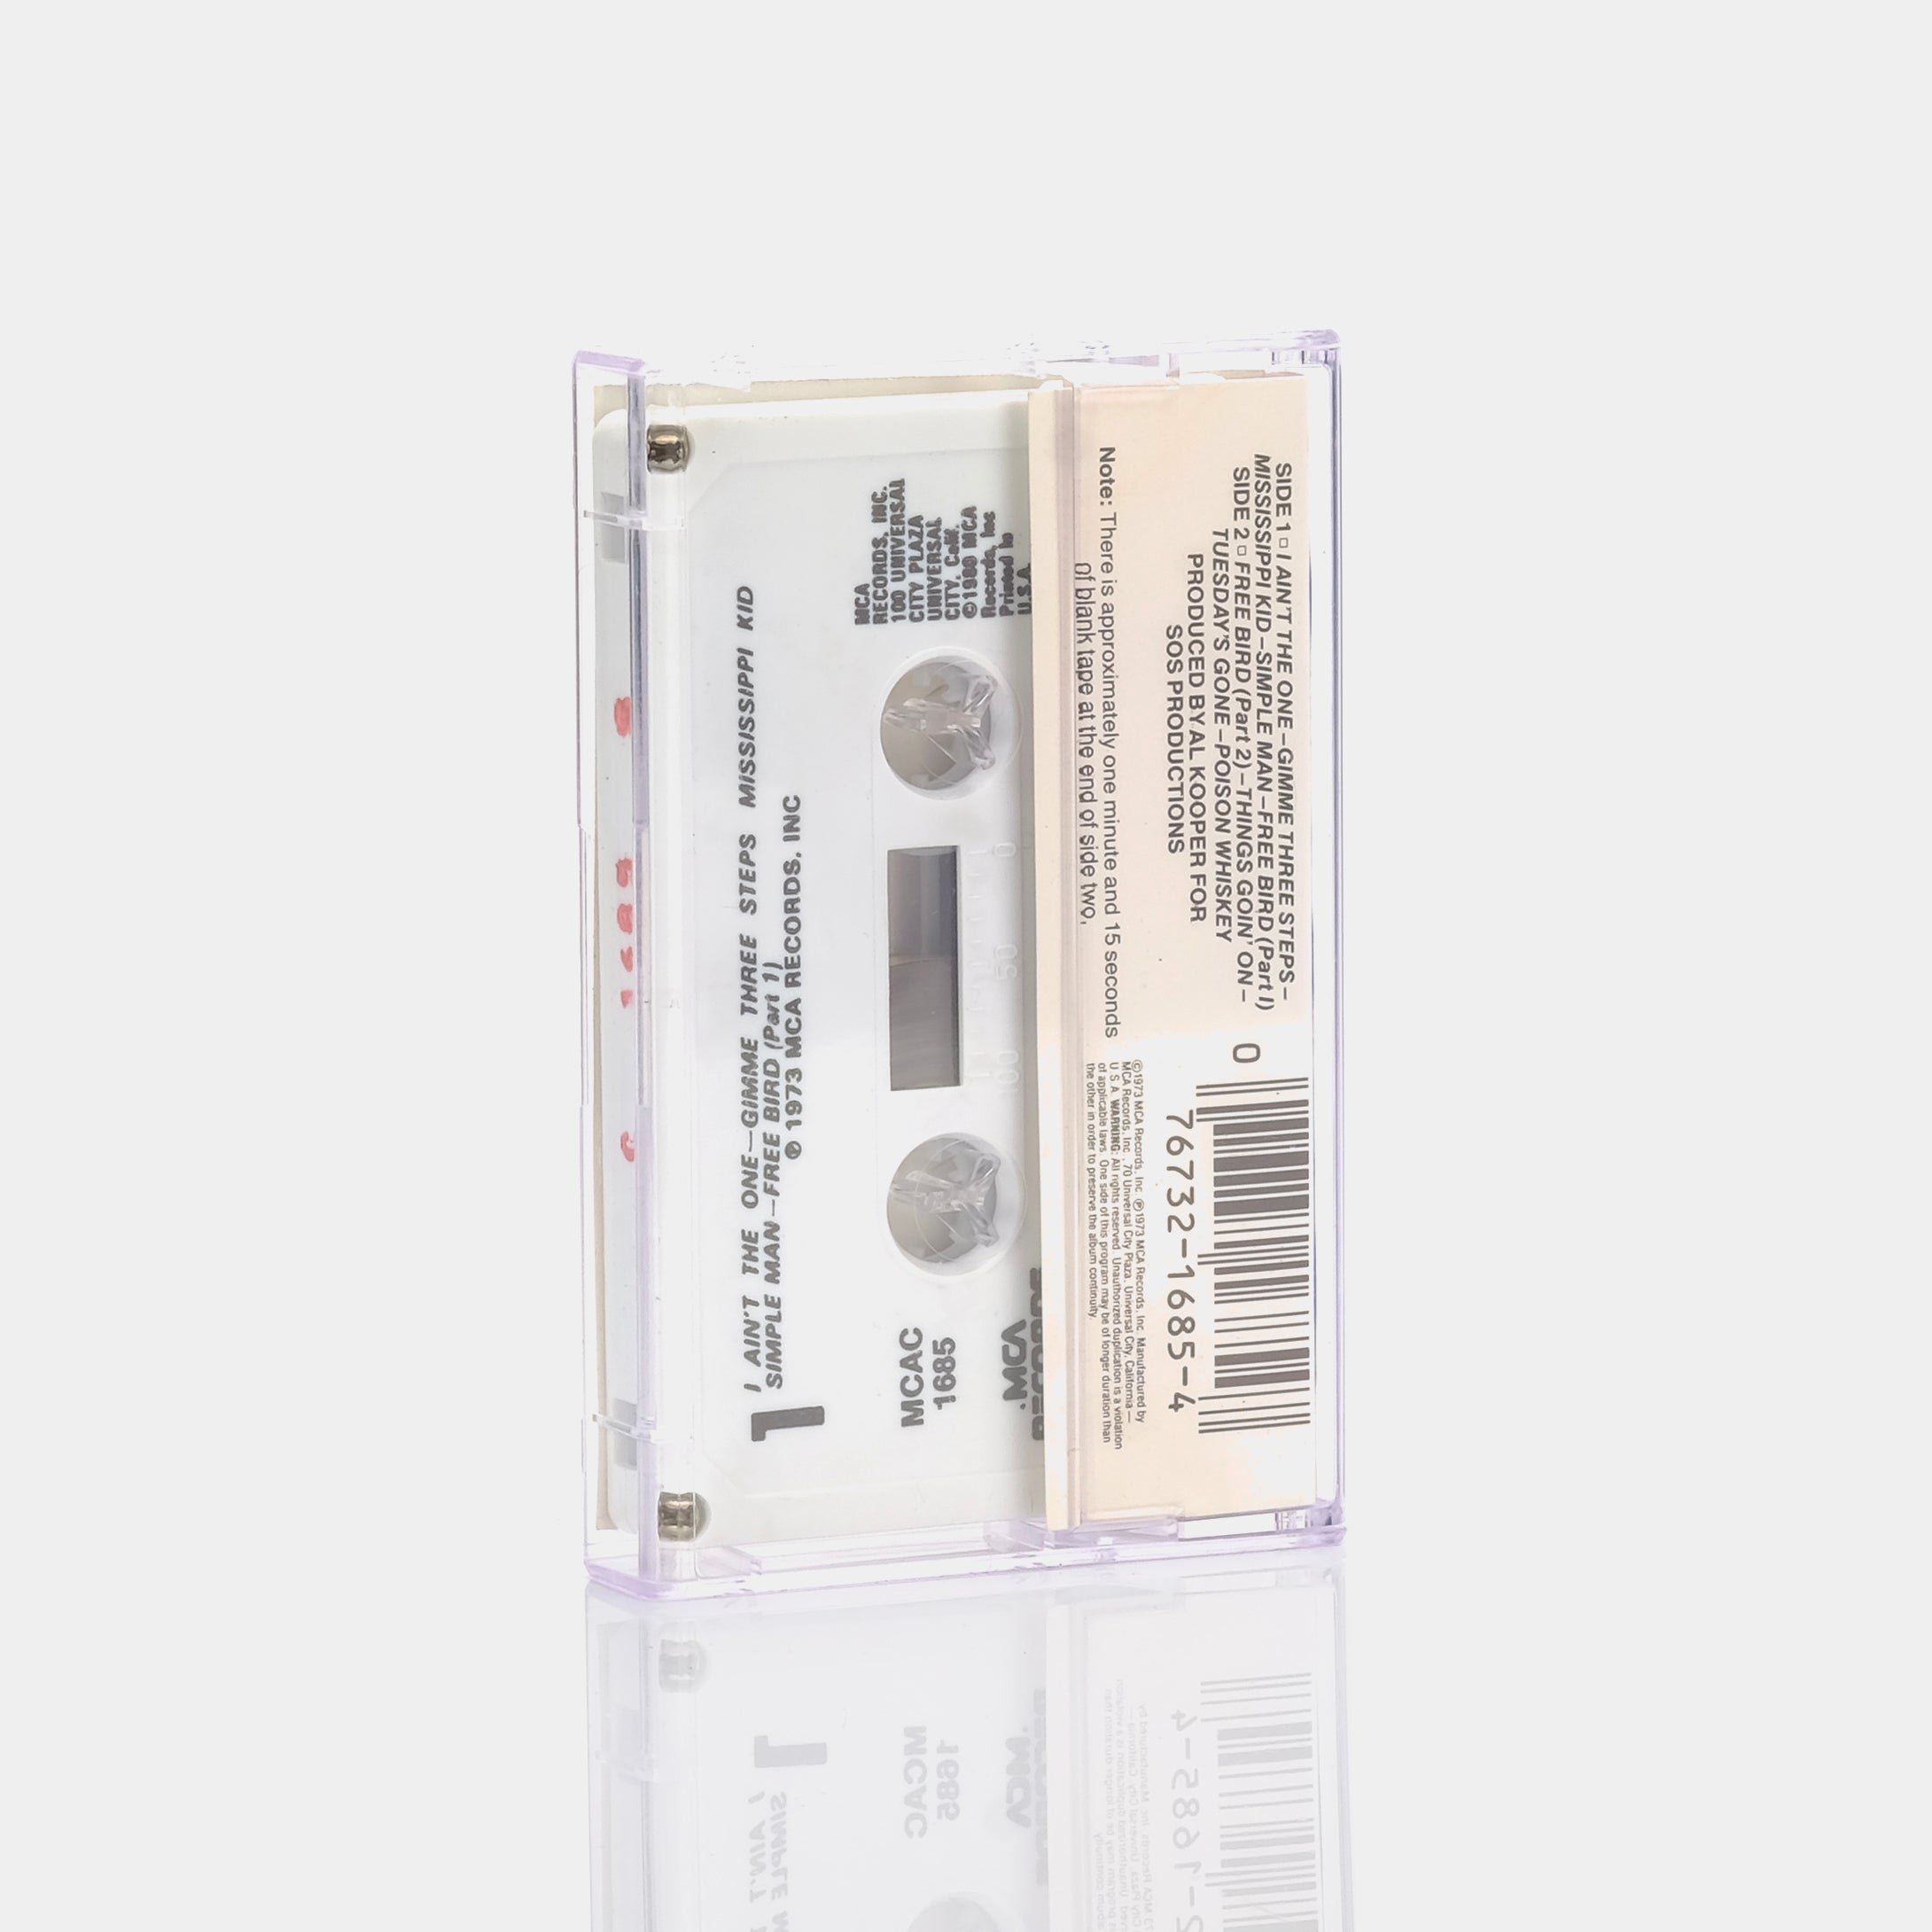 Lynyrd Skynyrd - Pronounced Leh-Nerd Skin-Nerd Cassette Tape